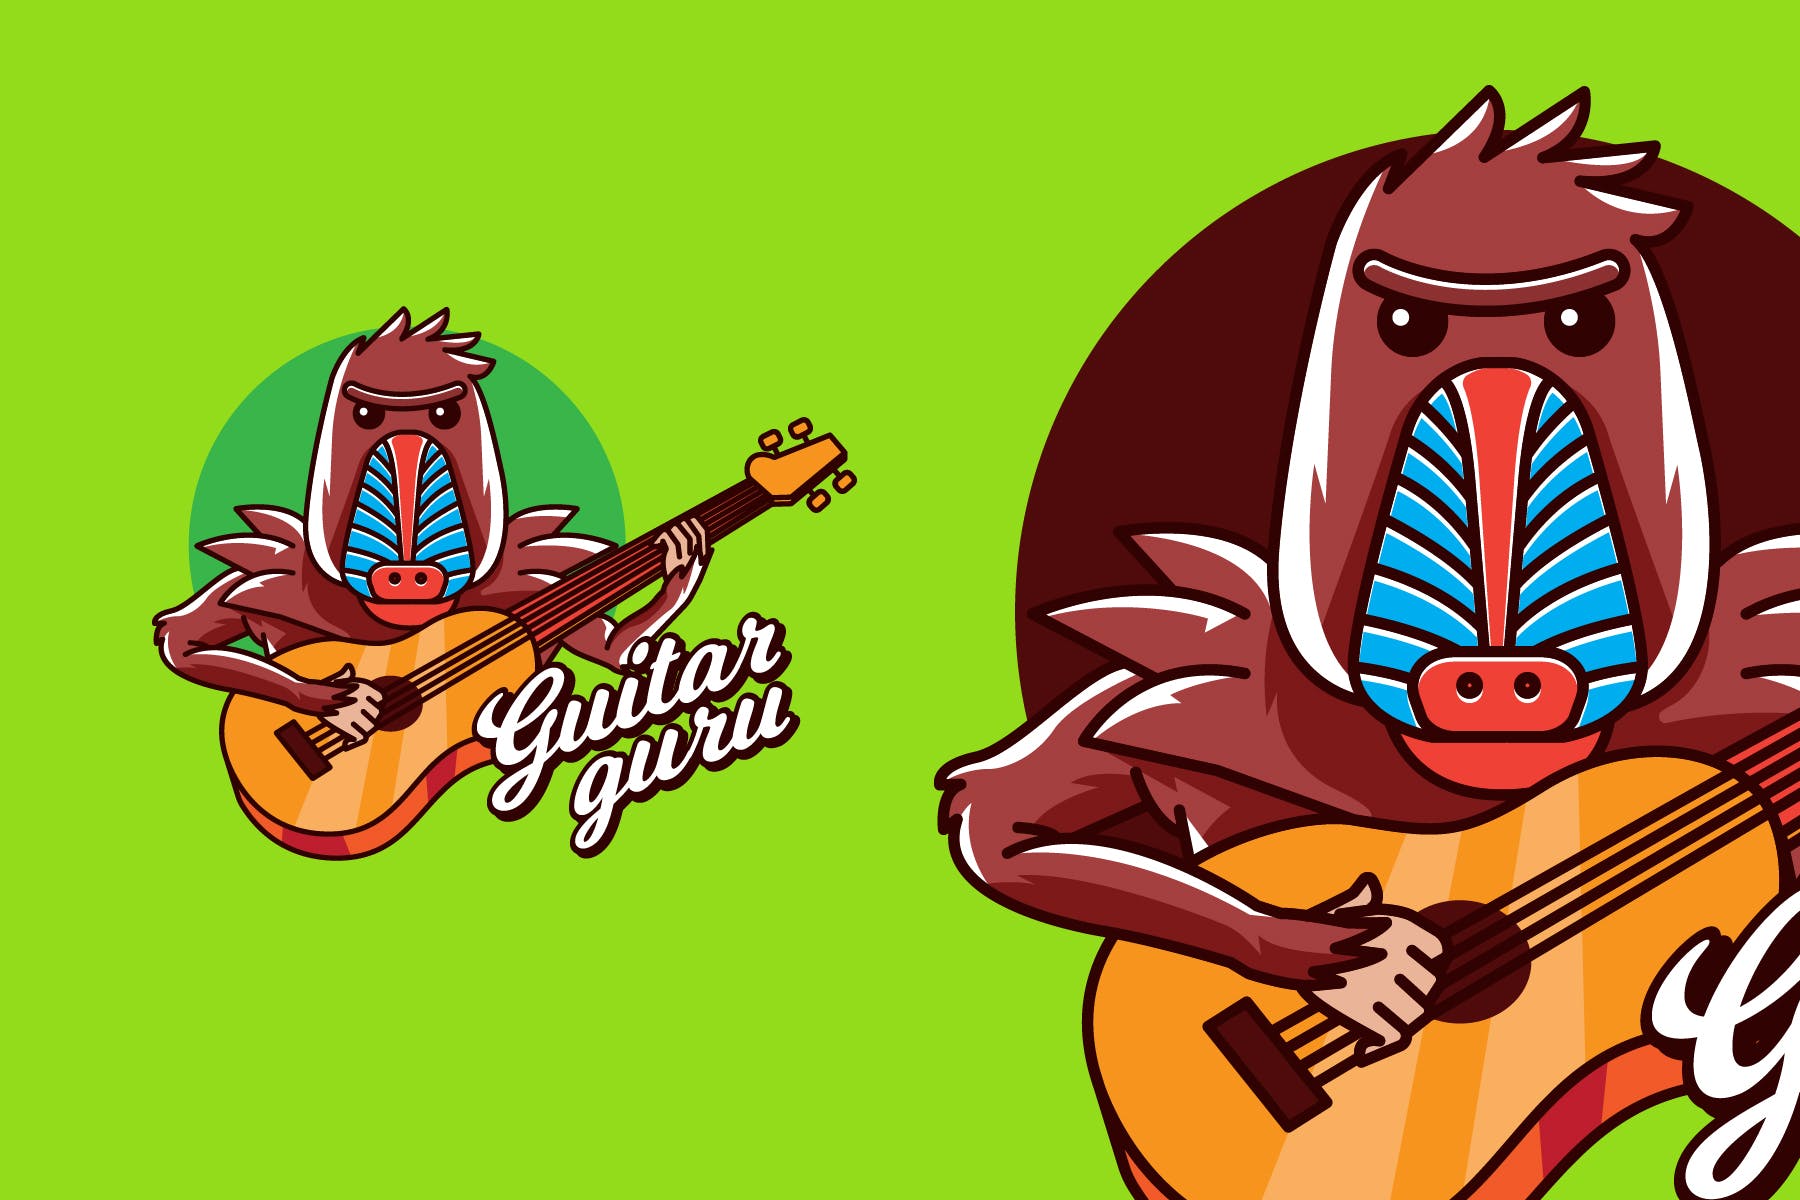 吉他大师卡通形象音乐培训品牌Logo设计素材库精选模板 GUITAR GURU – Mascot & Esport Logo插图